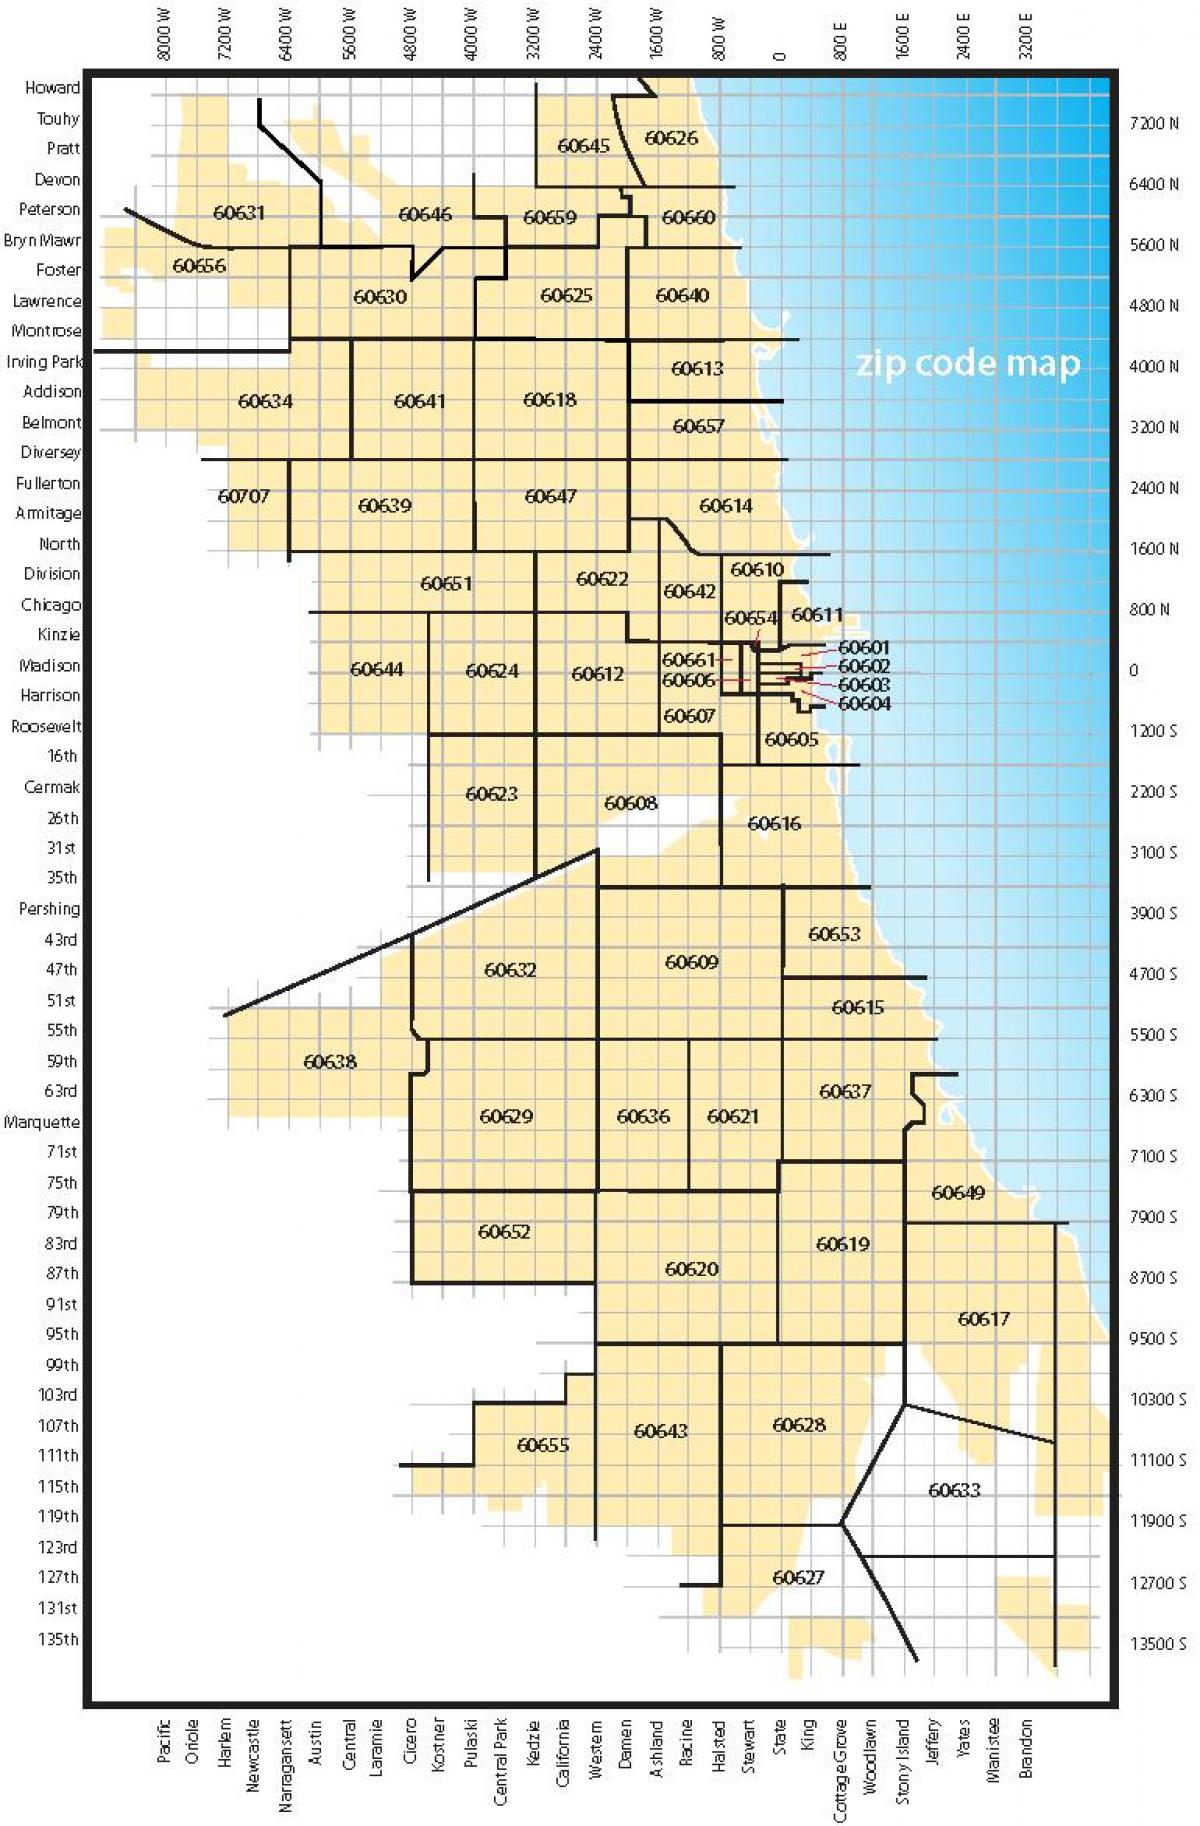 Chicago area-code anzeigen